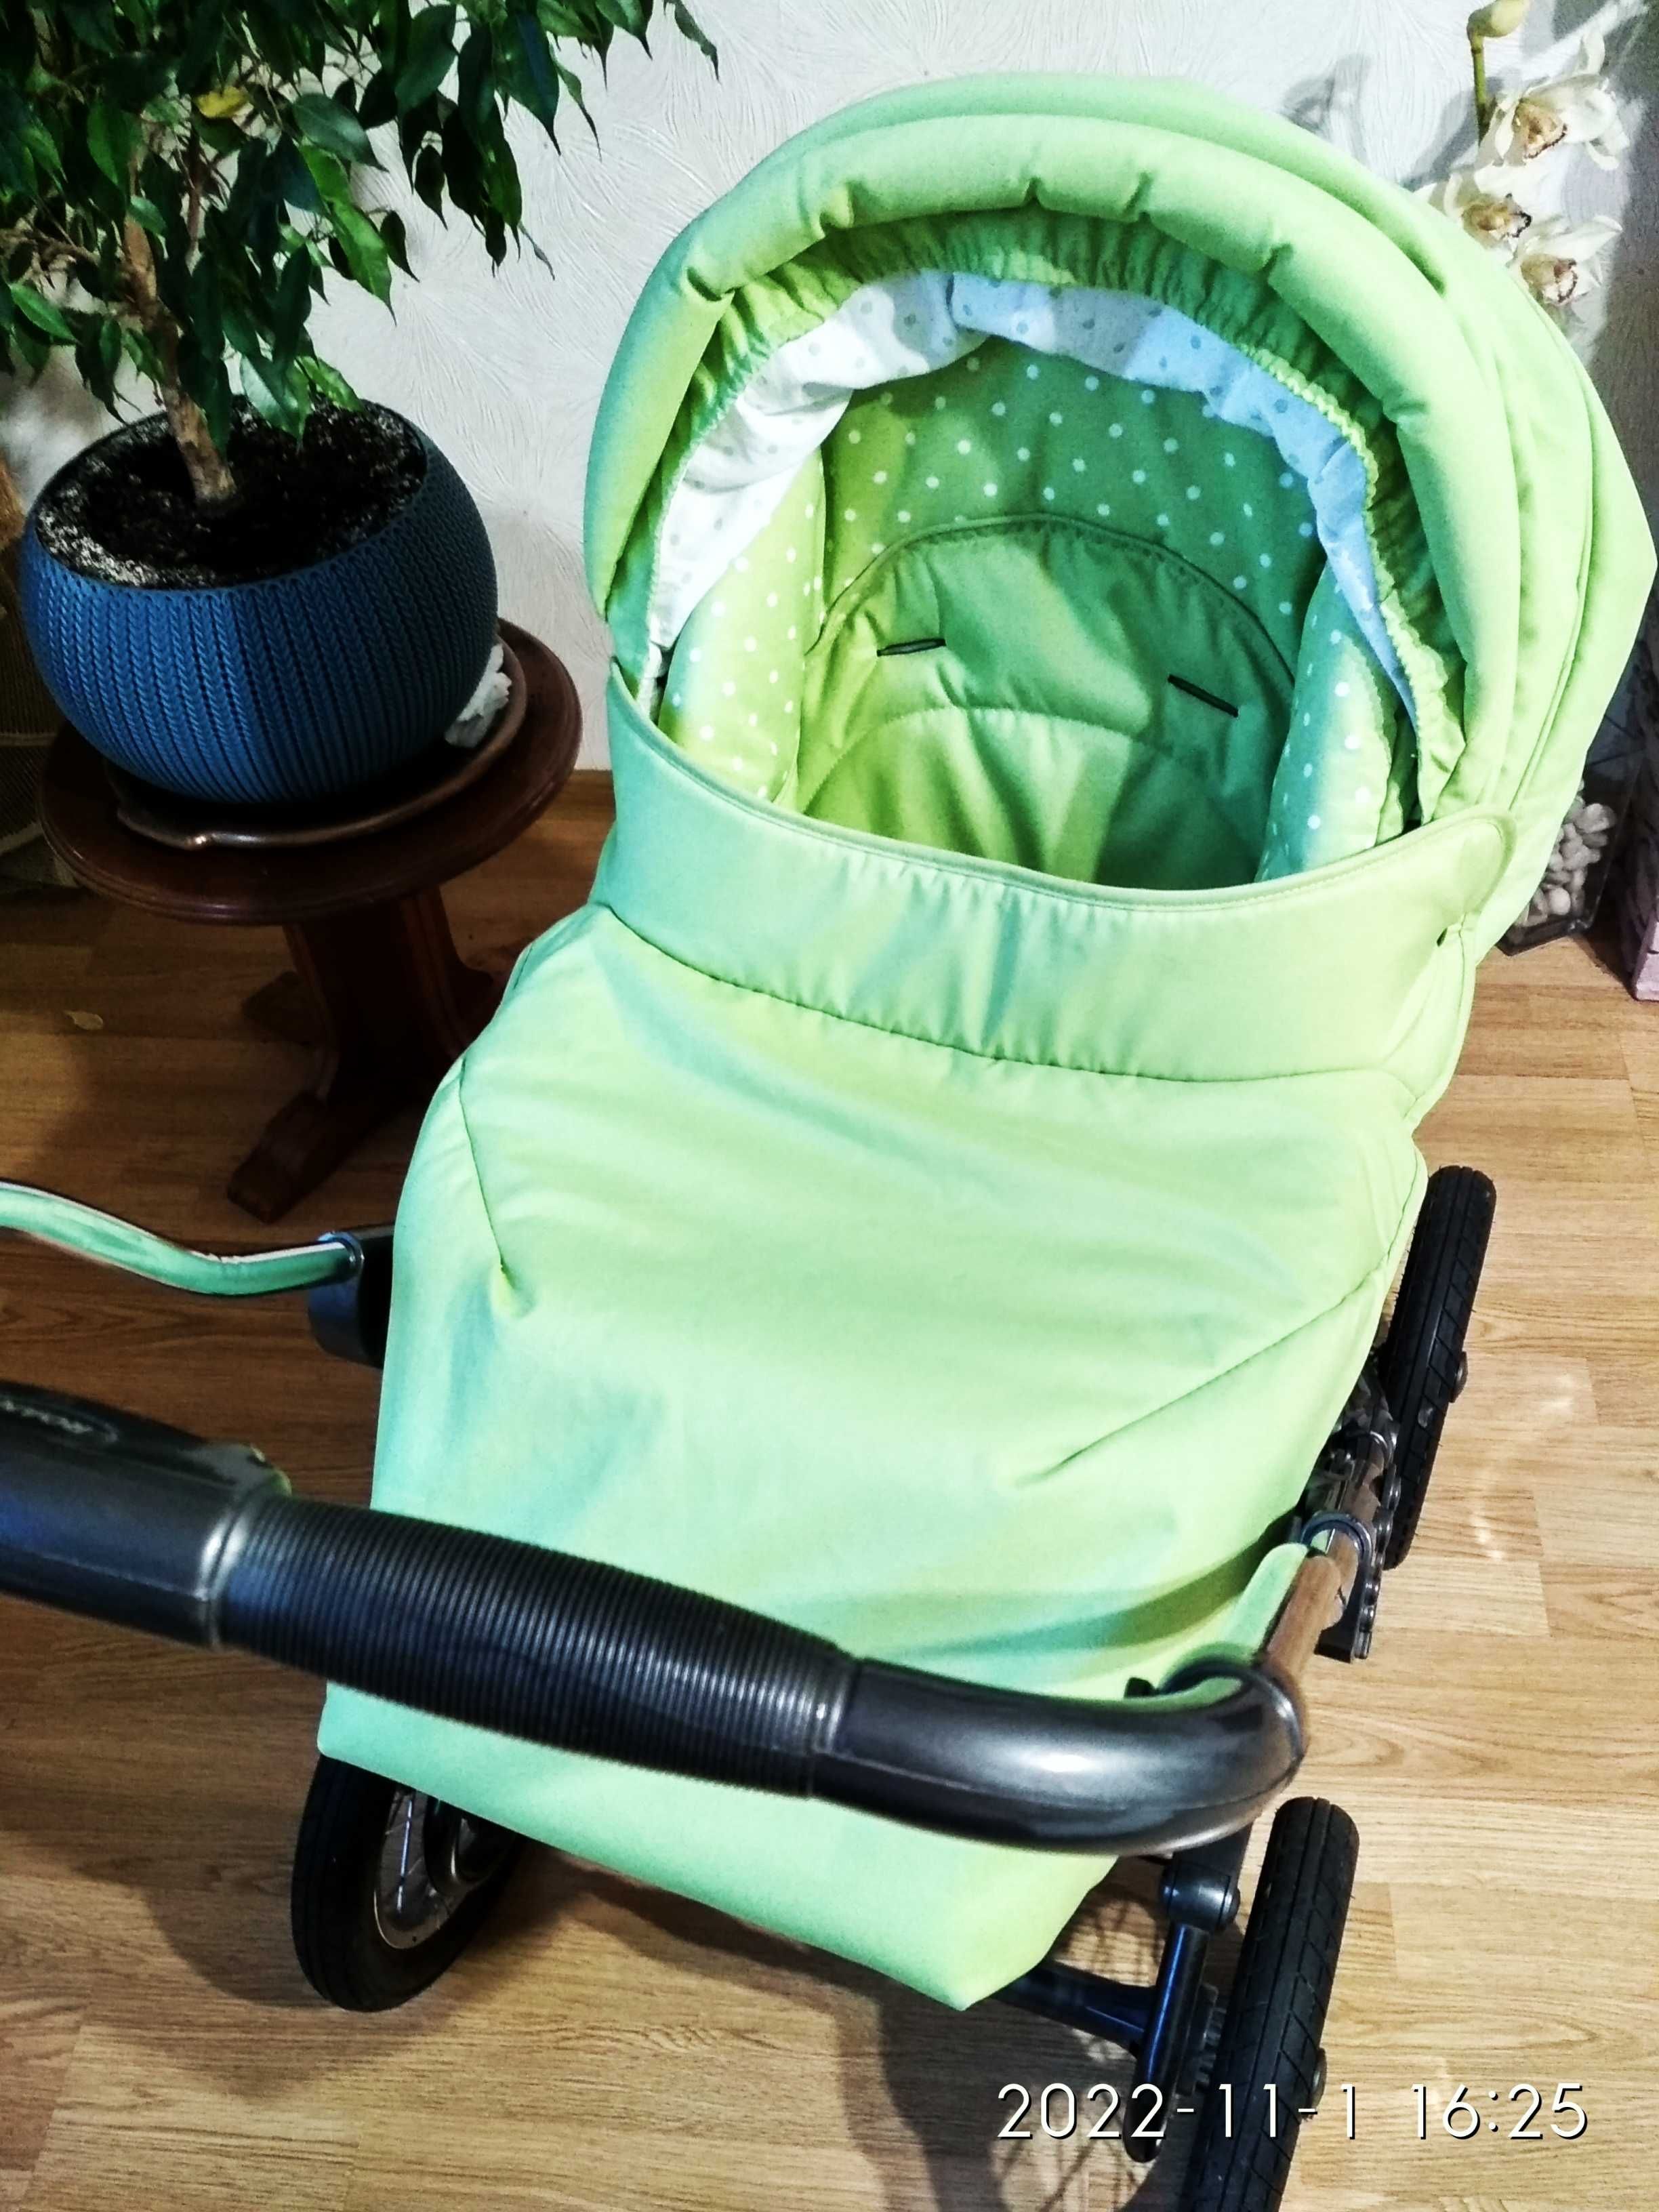 Продам Roan Marita 2 в 1 польскую детскую коляску в уникальном цвете